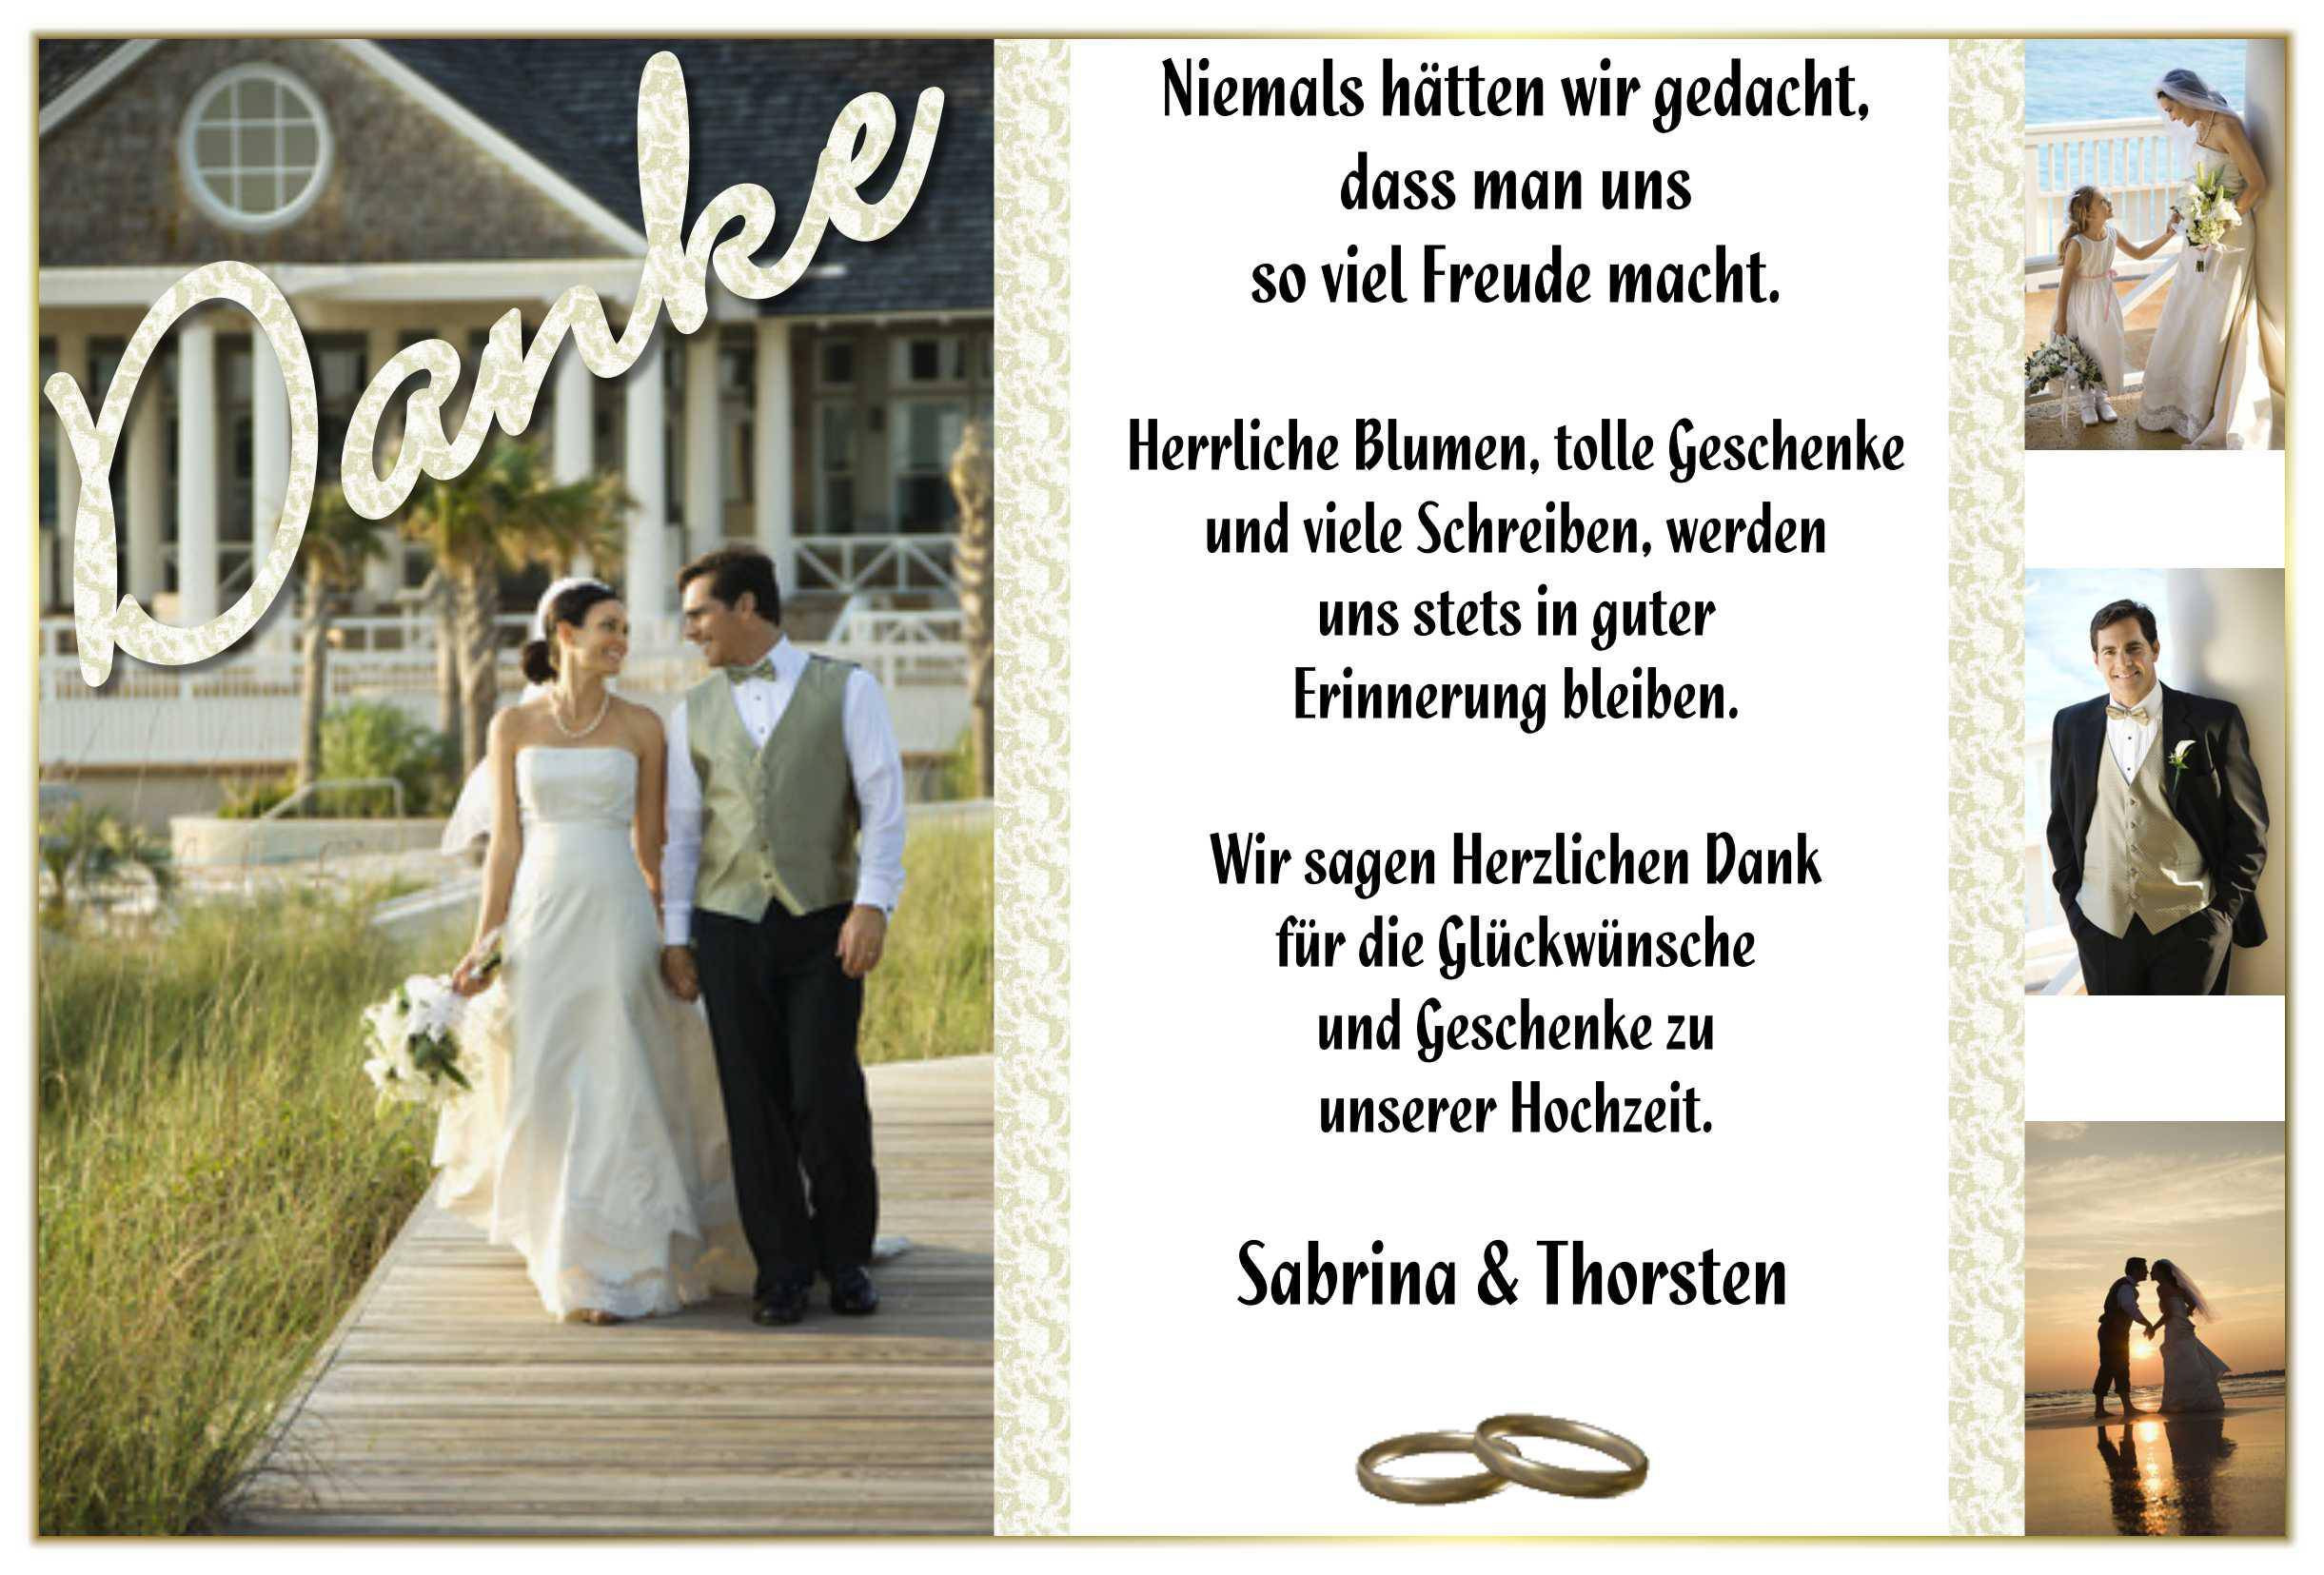 Danksagung Hochzeit Text Persönlich
 Dankeskarten Hochzeit Text Hochzeit Danksagung Text